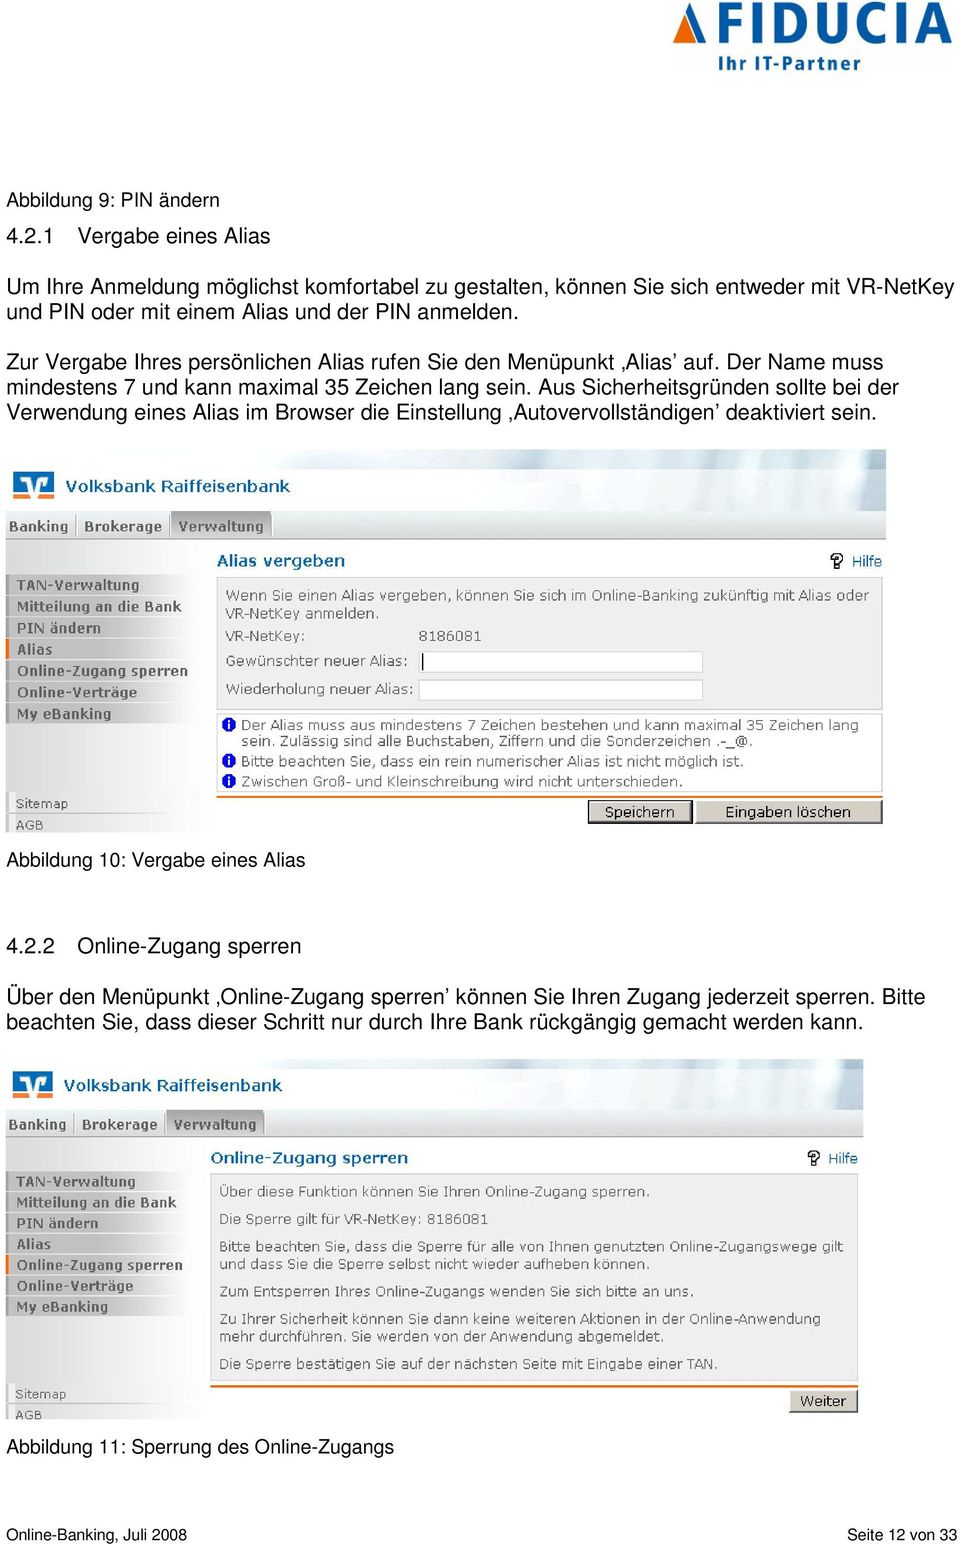 Aus Sicherheitsgründen sollte bei der Verwendung eines Alias im Browser die Einstellung Autovervollständigen deaktiviert sein. Abbildung 10: Vergabe eines Alias 4.2.